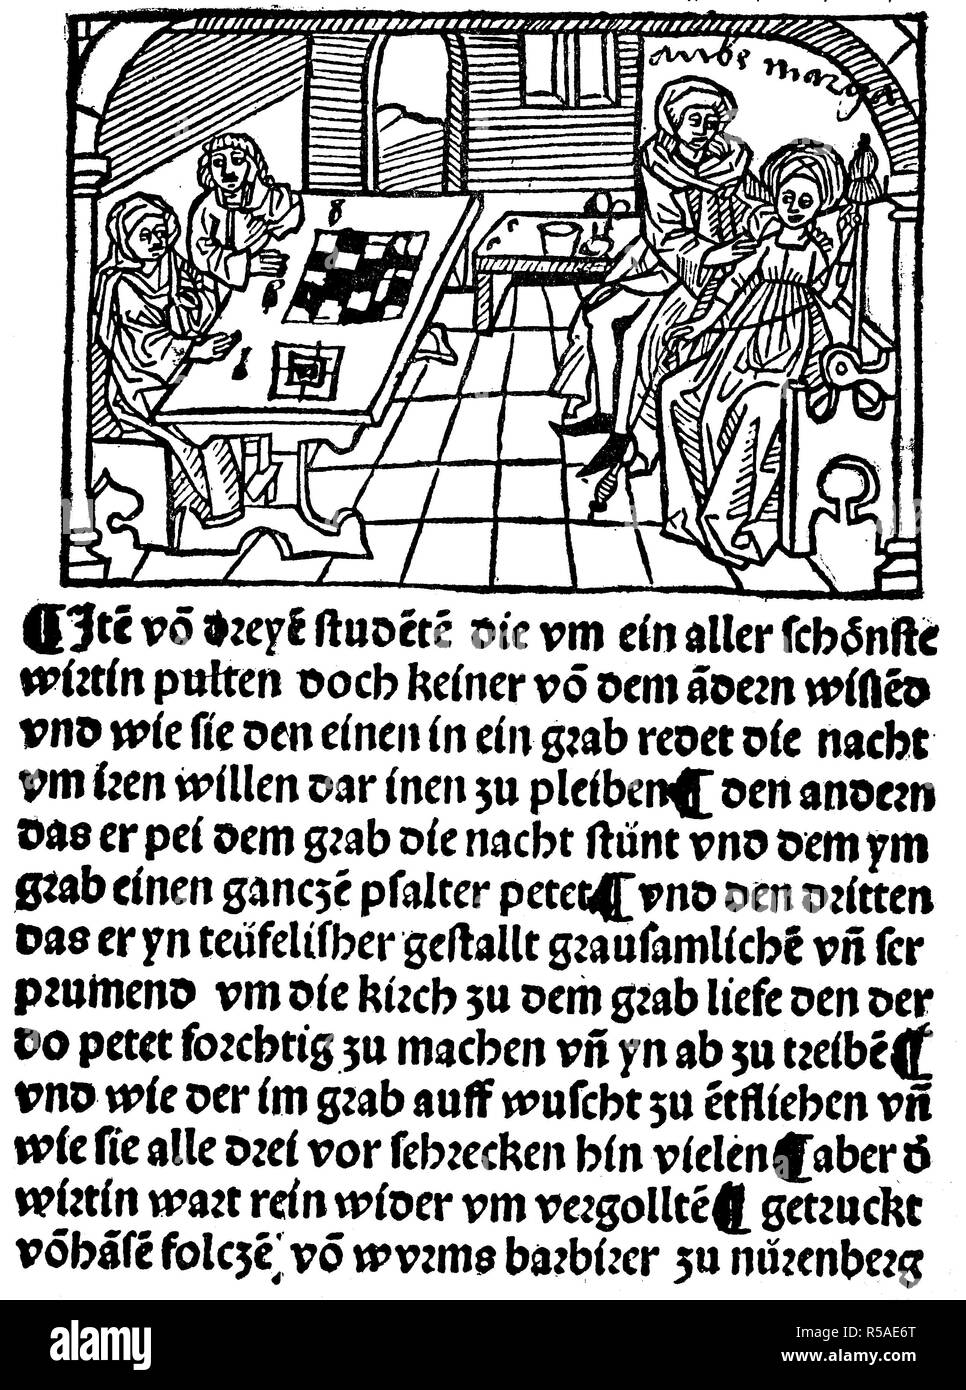 Les étudiants d'une aventure d'amour, d'un livre de récits Hans Folz, 1480, gravure sur bois, Allemagne Banque D'Images